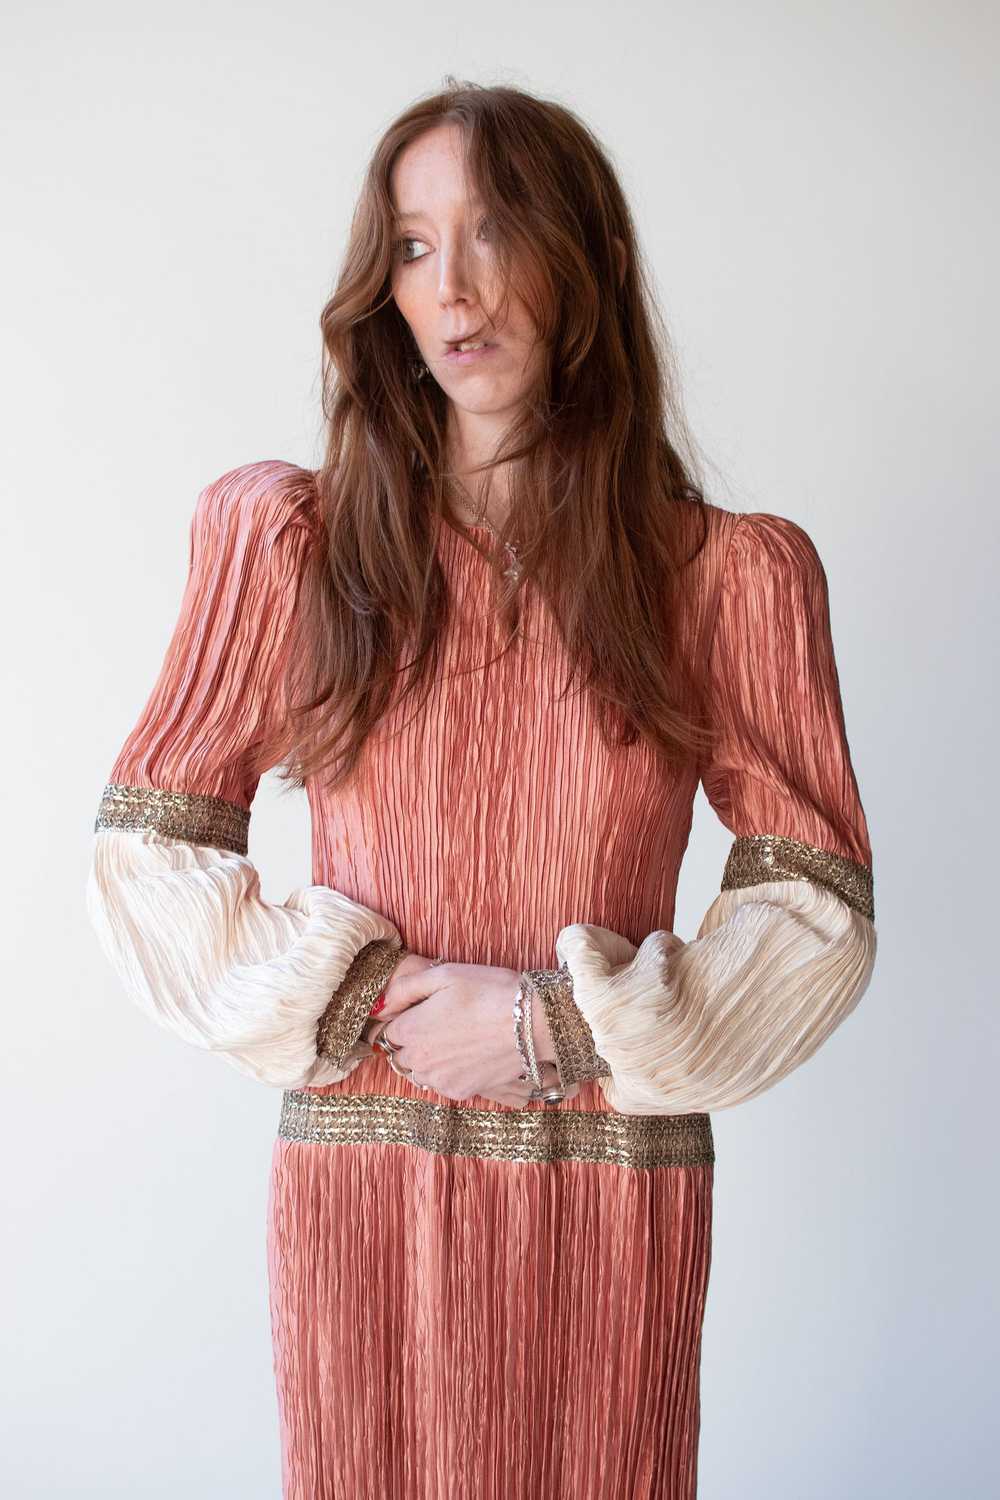 1980s Plisse Dress | Mary McFadden - image 2